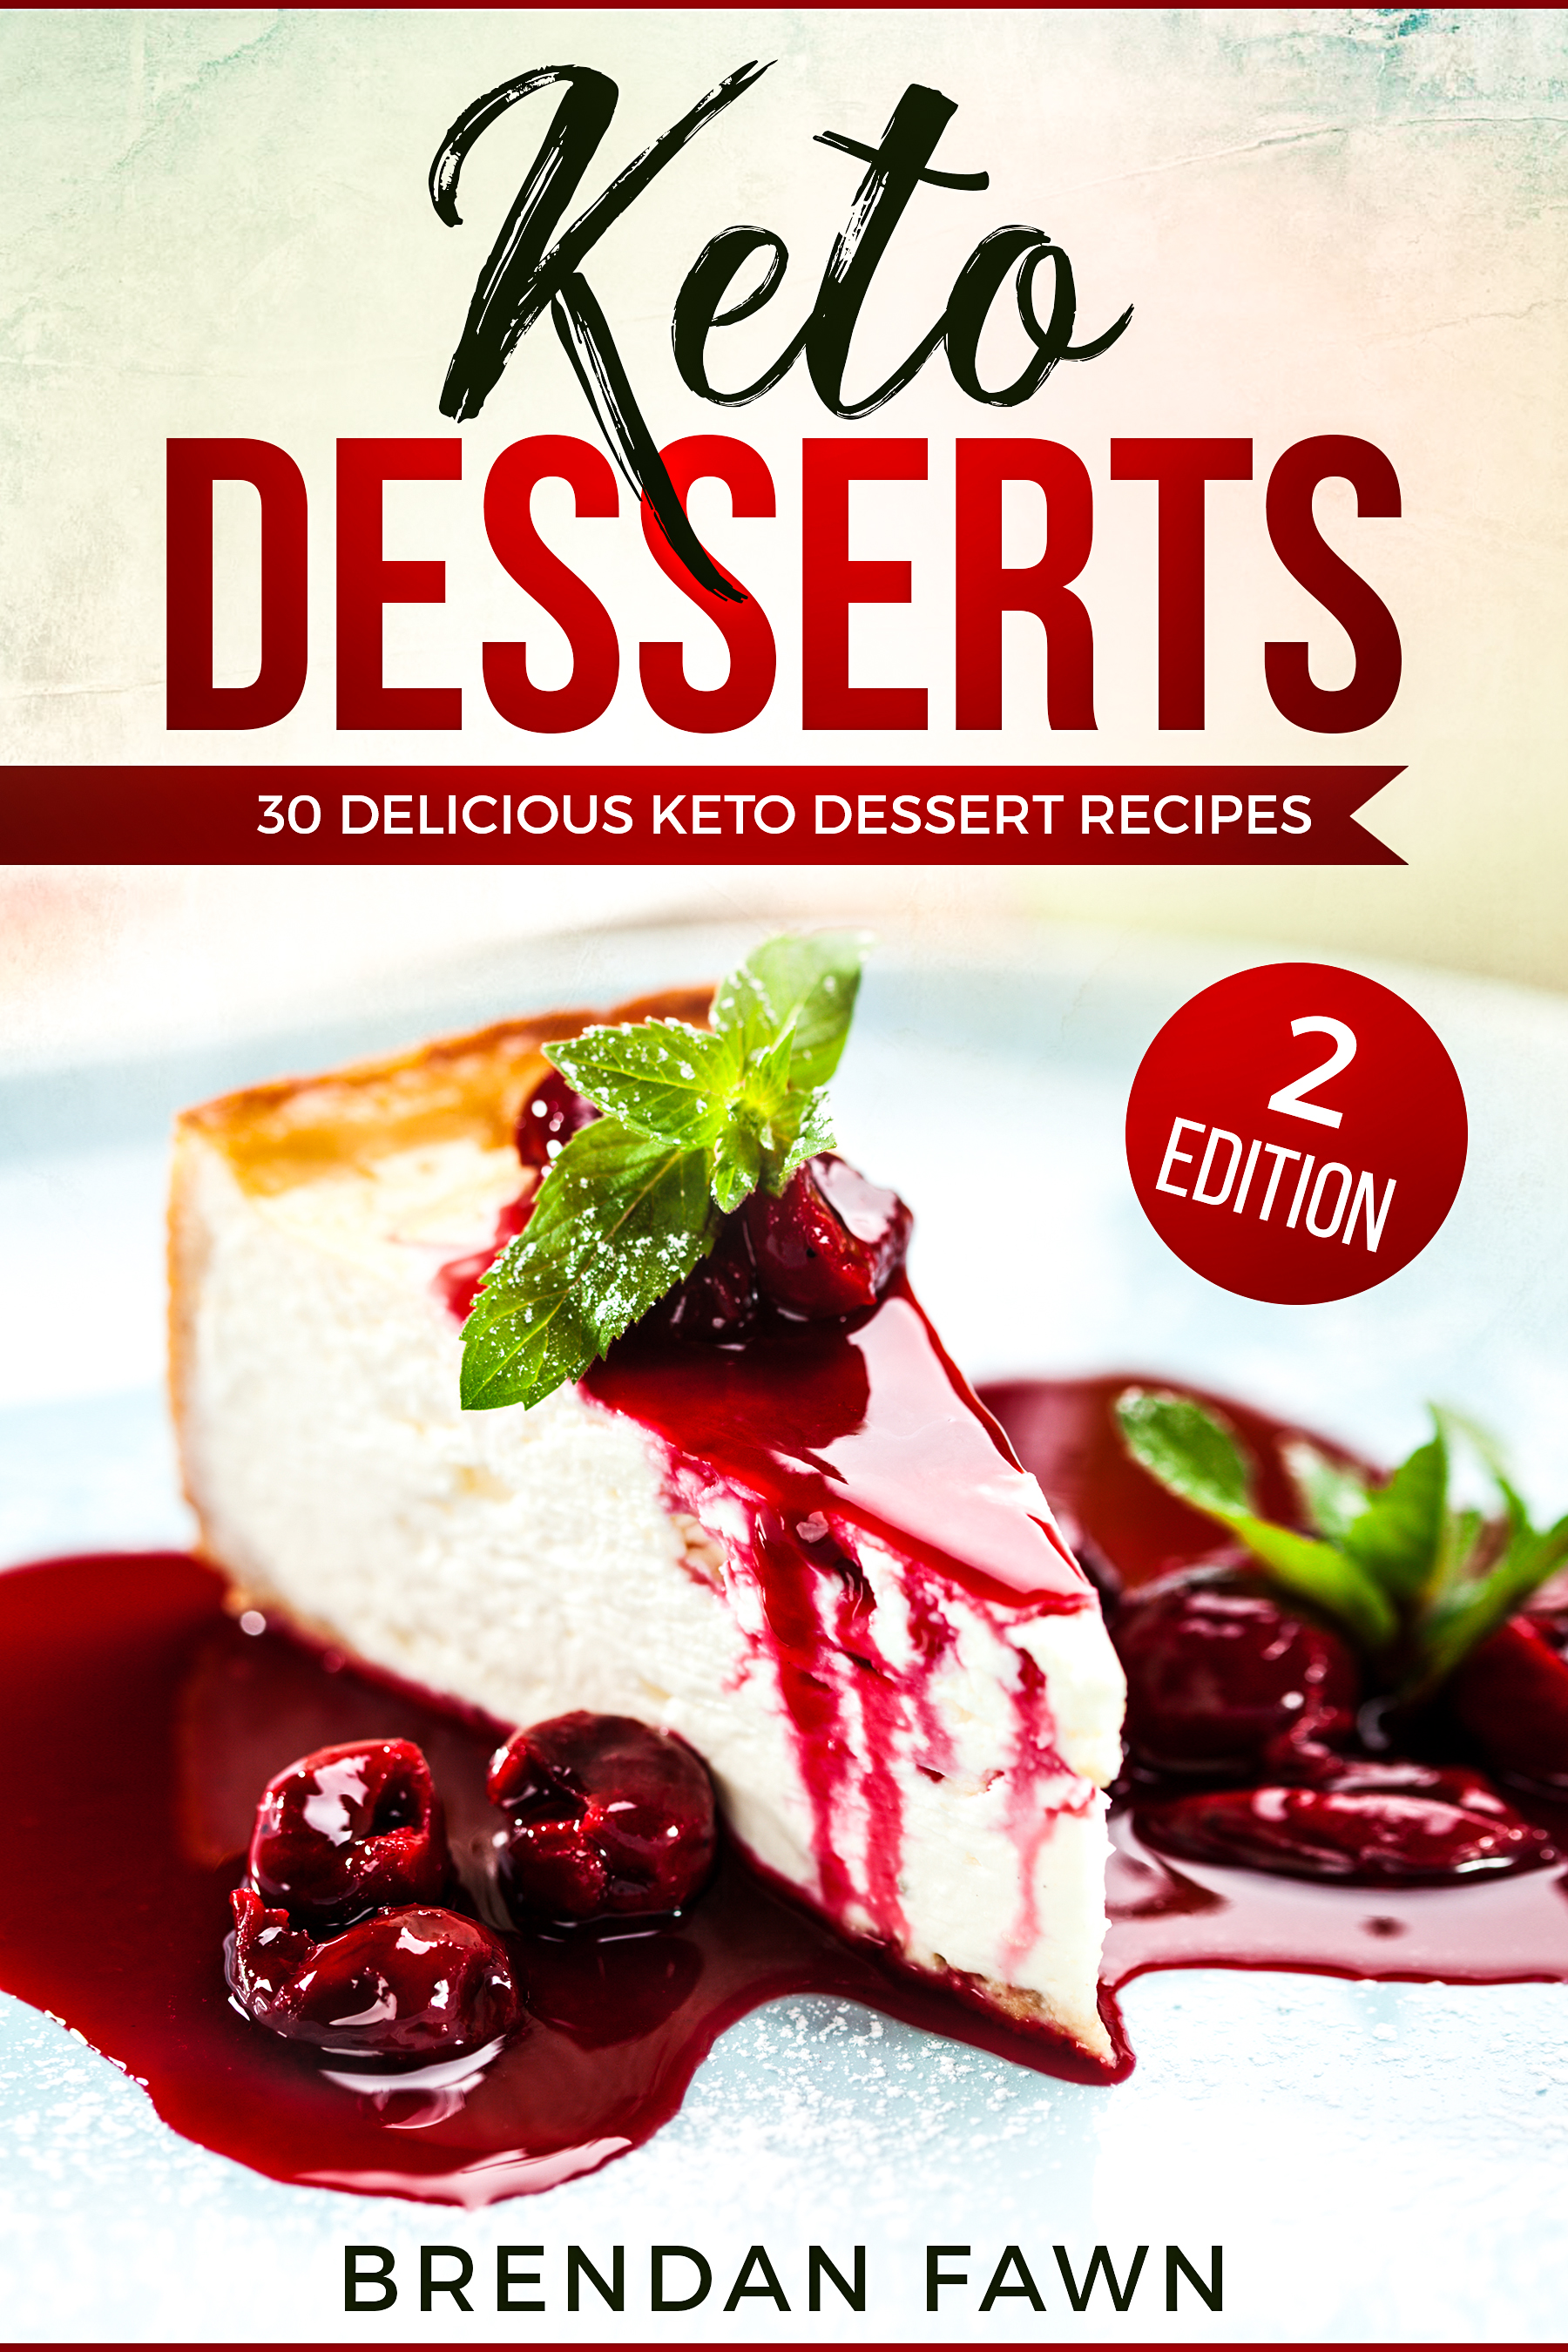 FREE: Keto Desserts: 30 Delicious Keto Dessert Recipes by Brendan Fawn